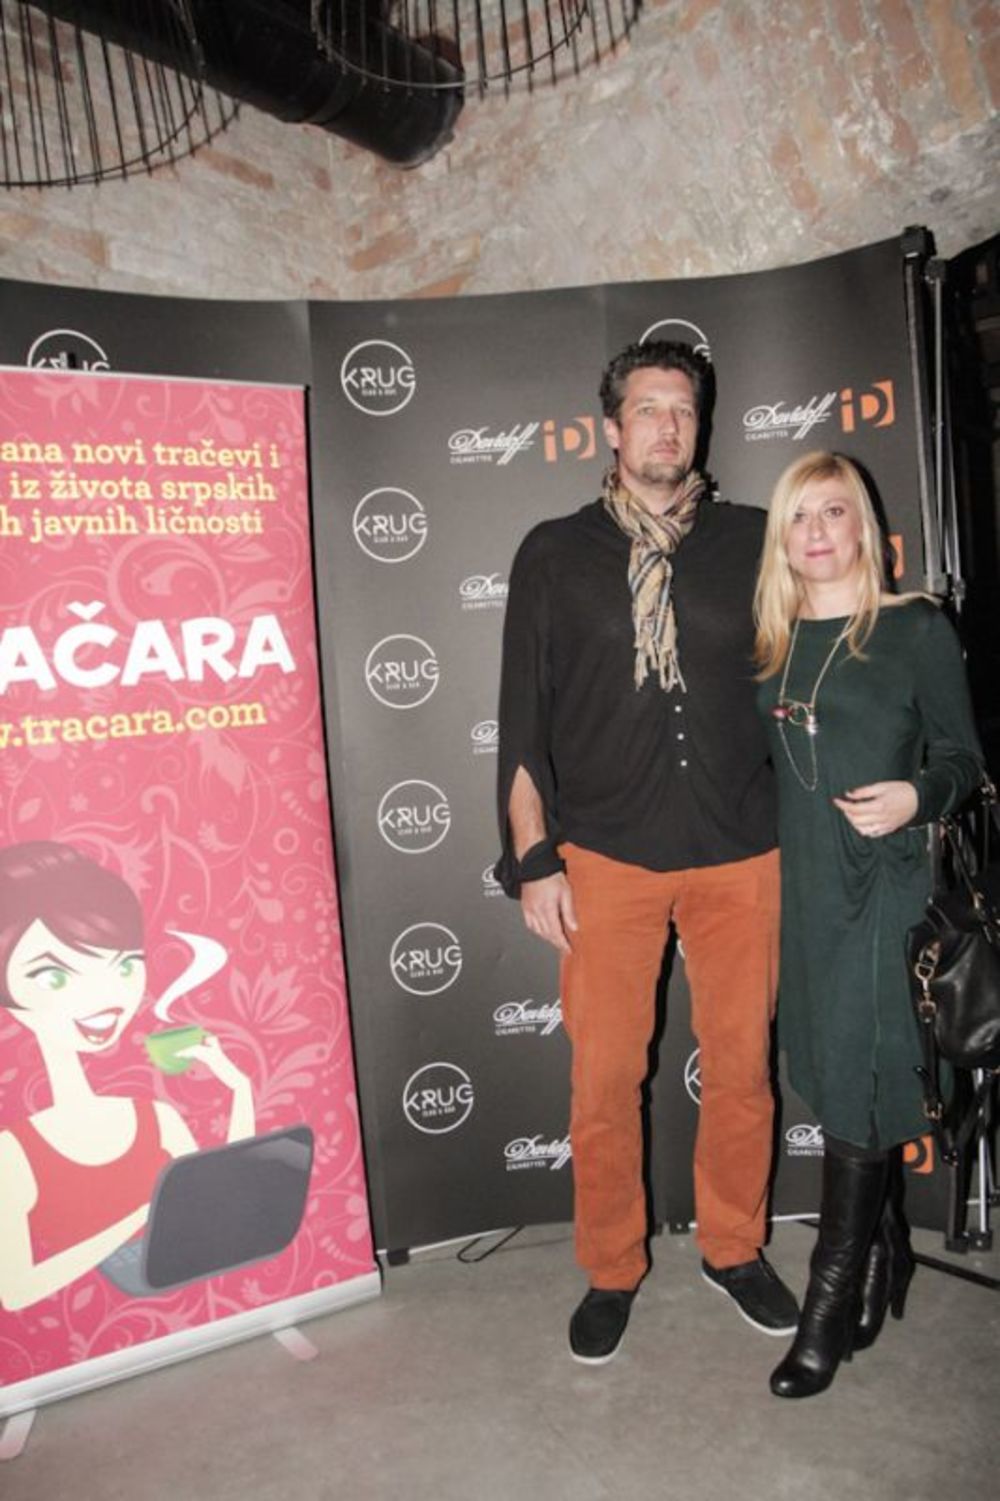 Prvi srpski internet tabloid, Tračara.com proslavio je u sredu, sedmog novembra, u klubu Krug četvrti rođendan. Goste slavljeničke žurke zabavljao je DJ Me-High-Low, kao i bend Top Kruz Tom Gun, dok je za vreme partyja upriličena i nagradna igra, uz pompezno i